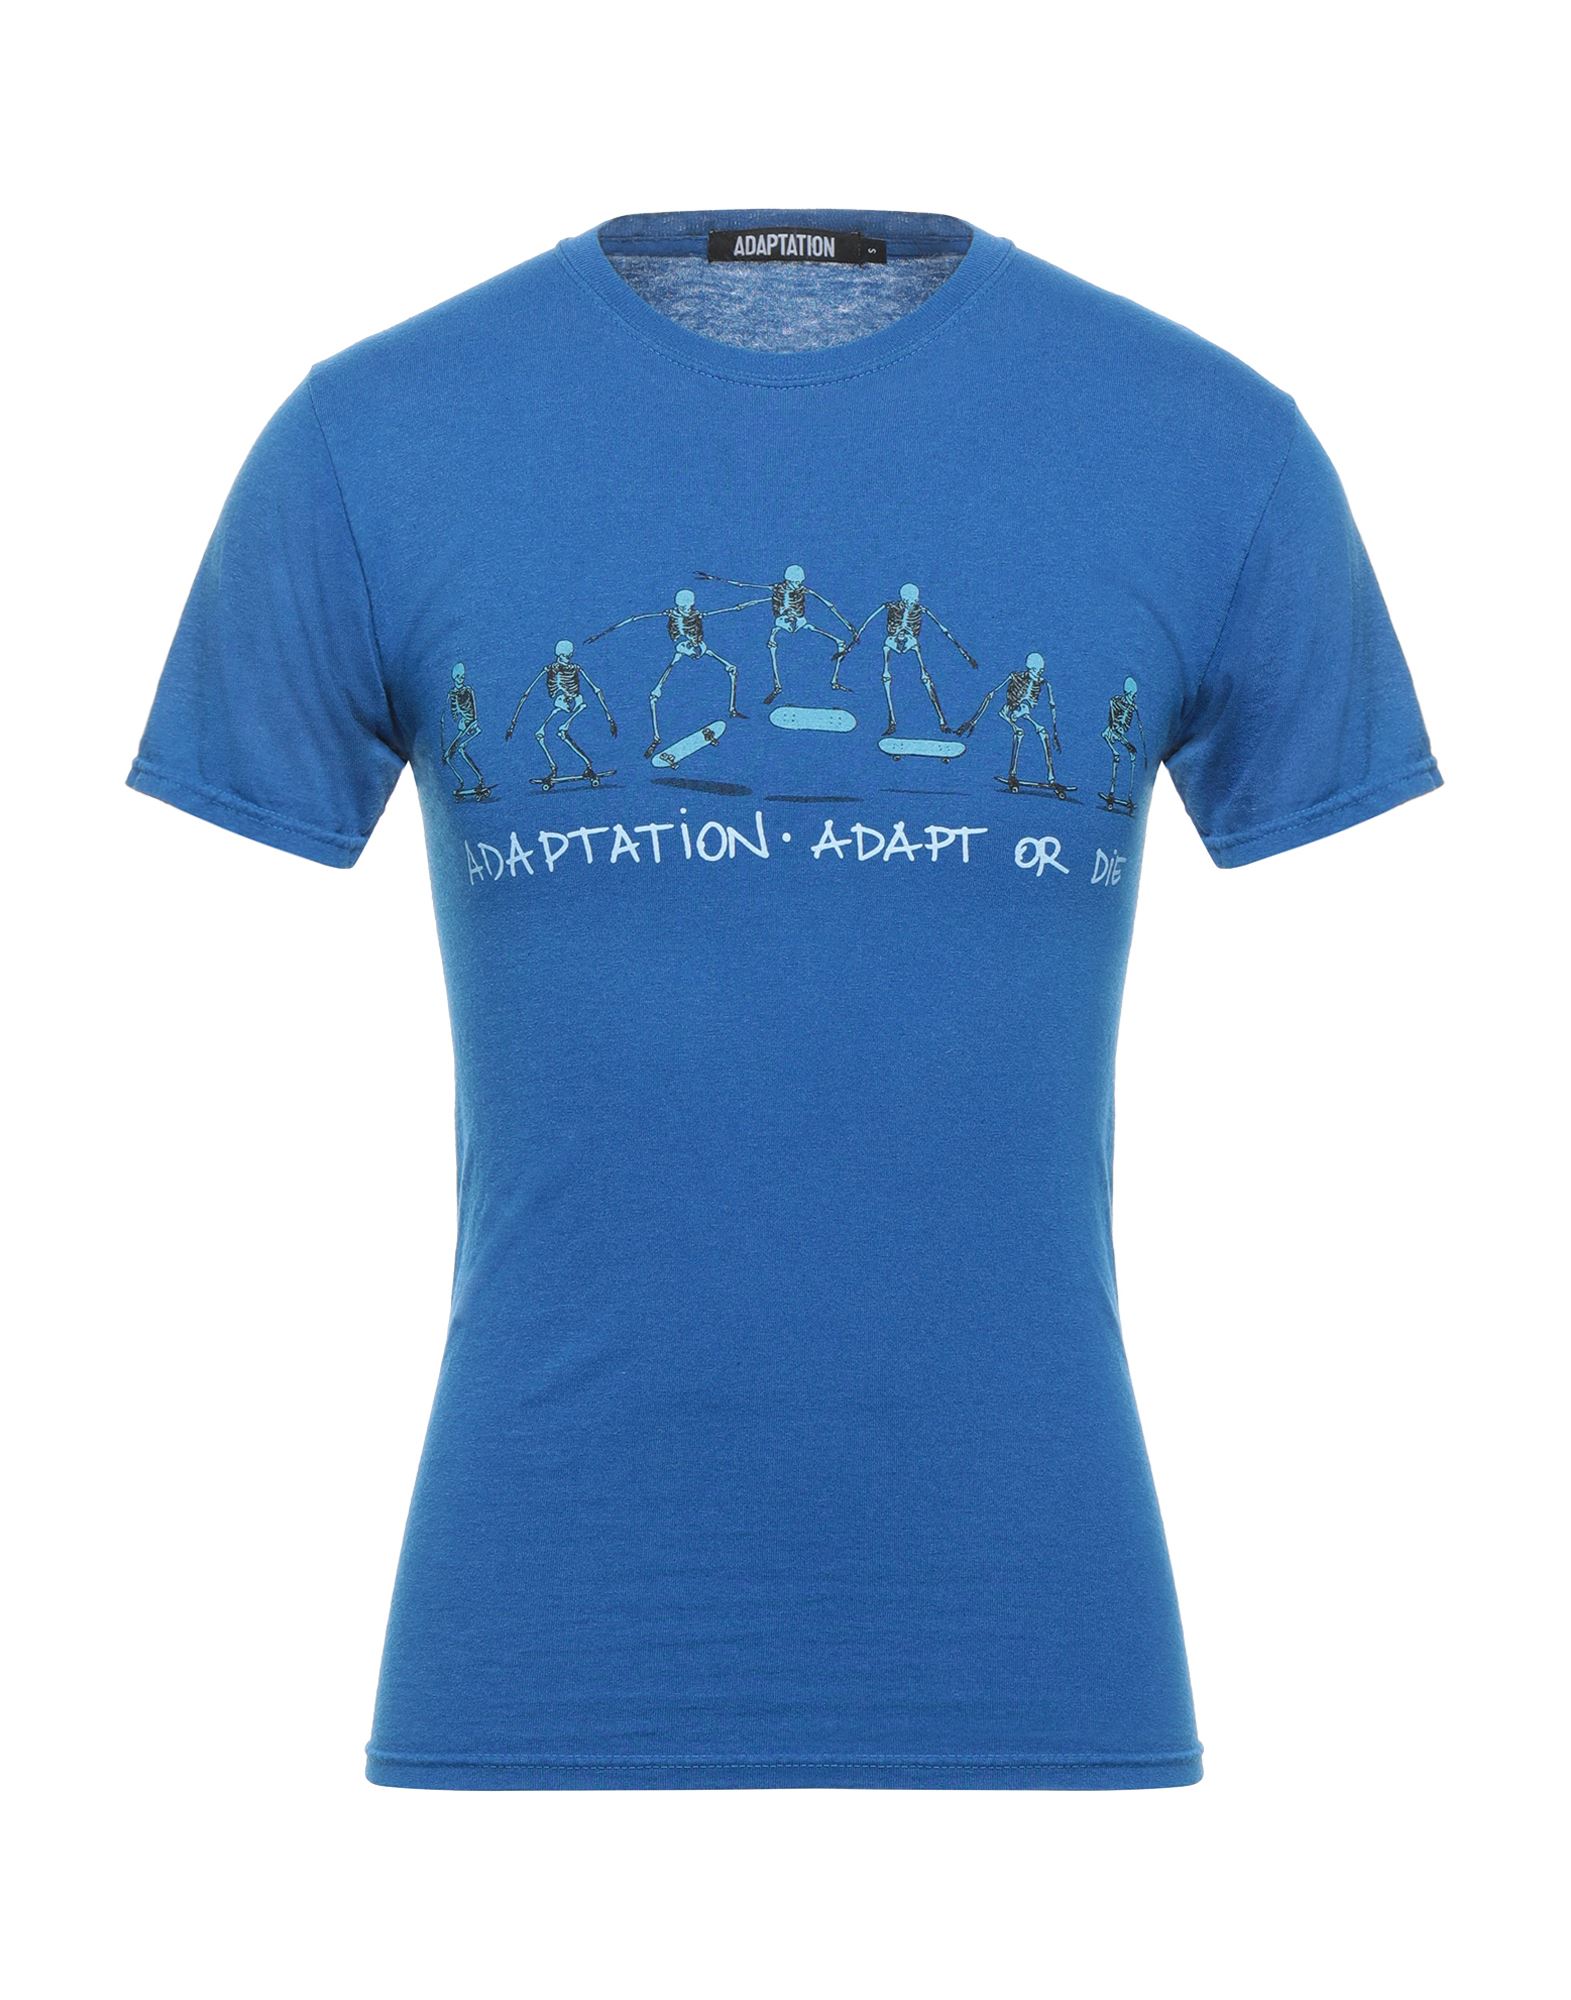 ADAPTATION T-shirts